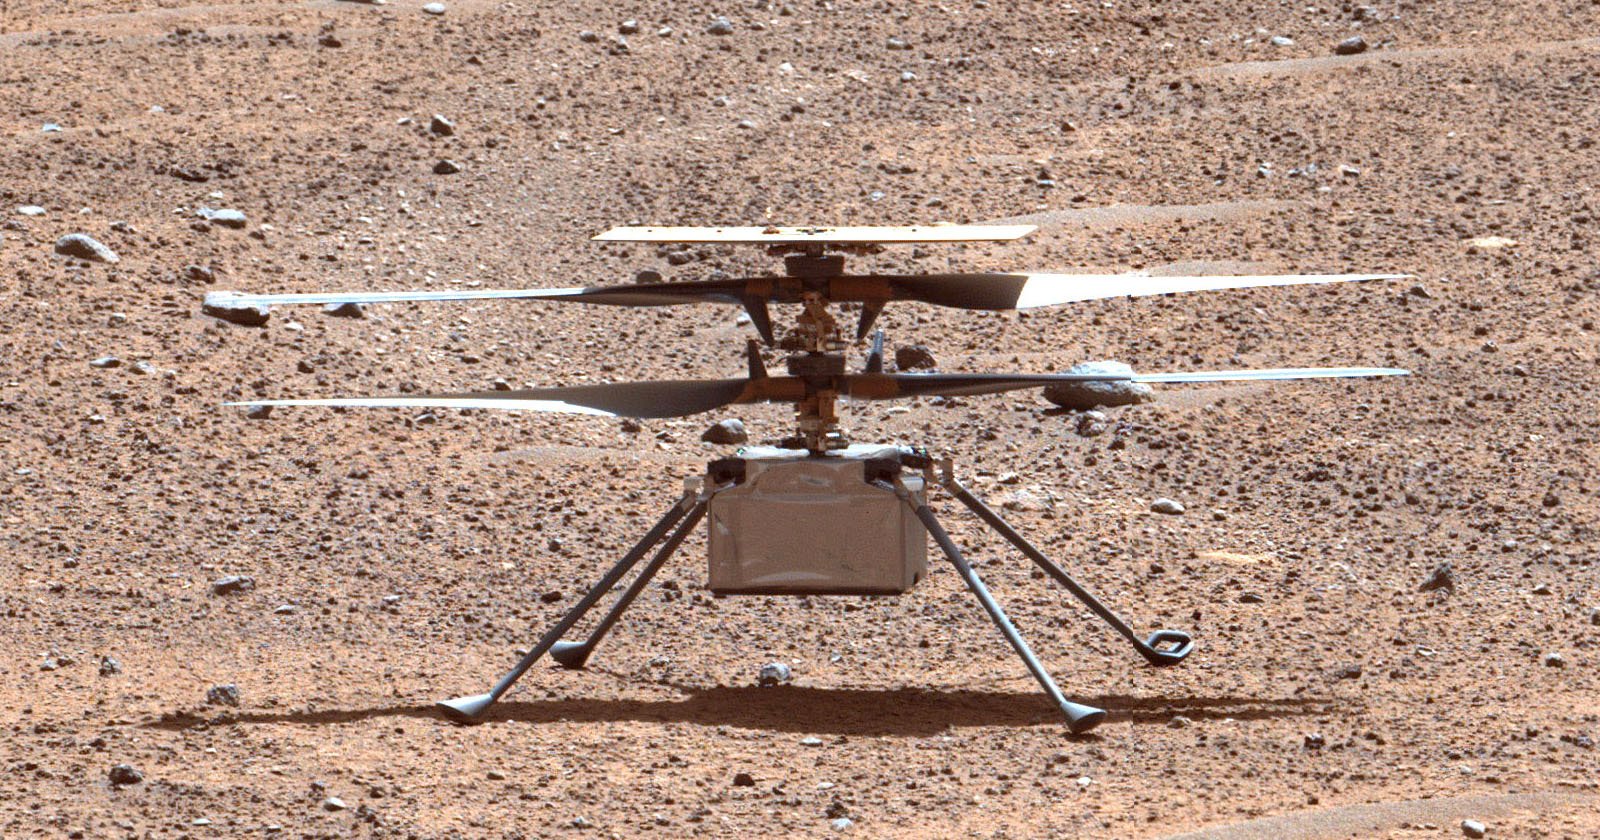  after years nasa mars camera drone has made 